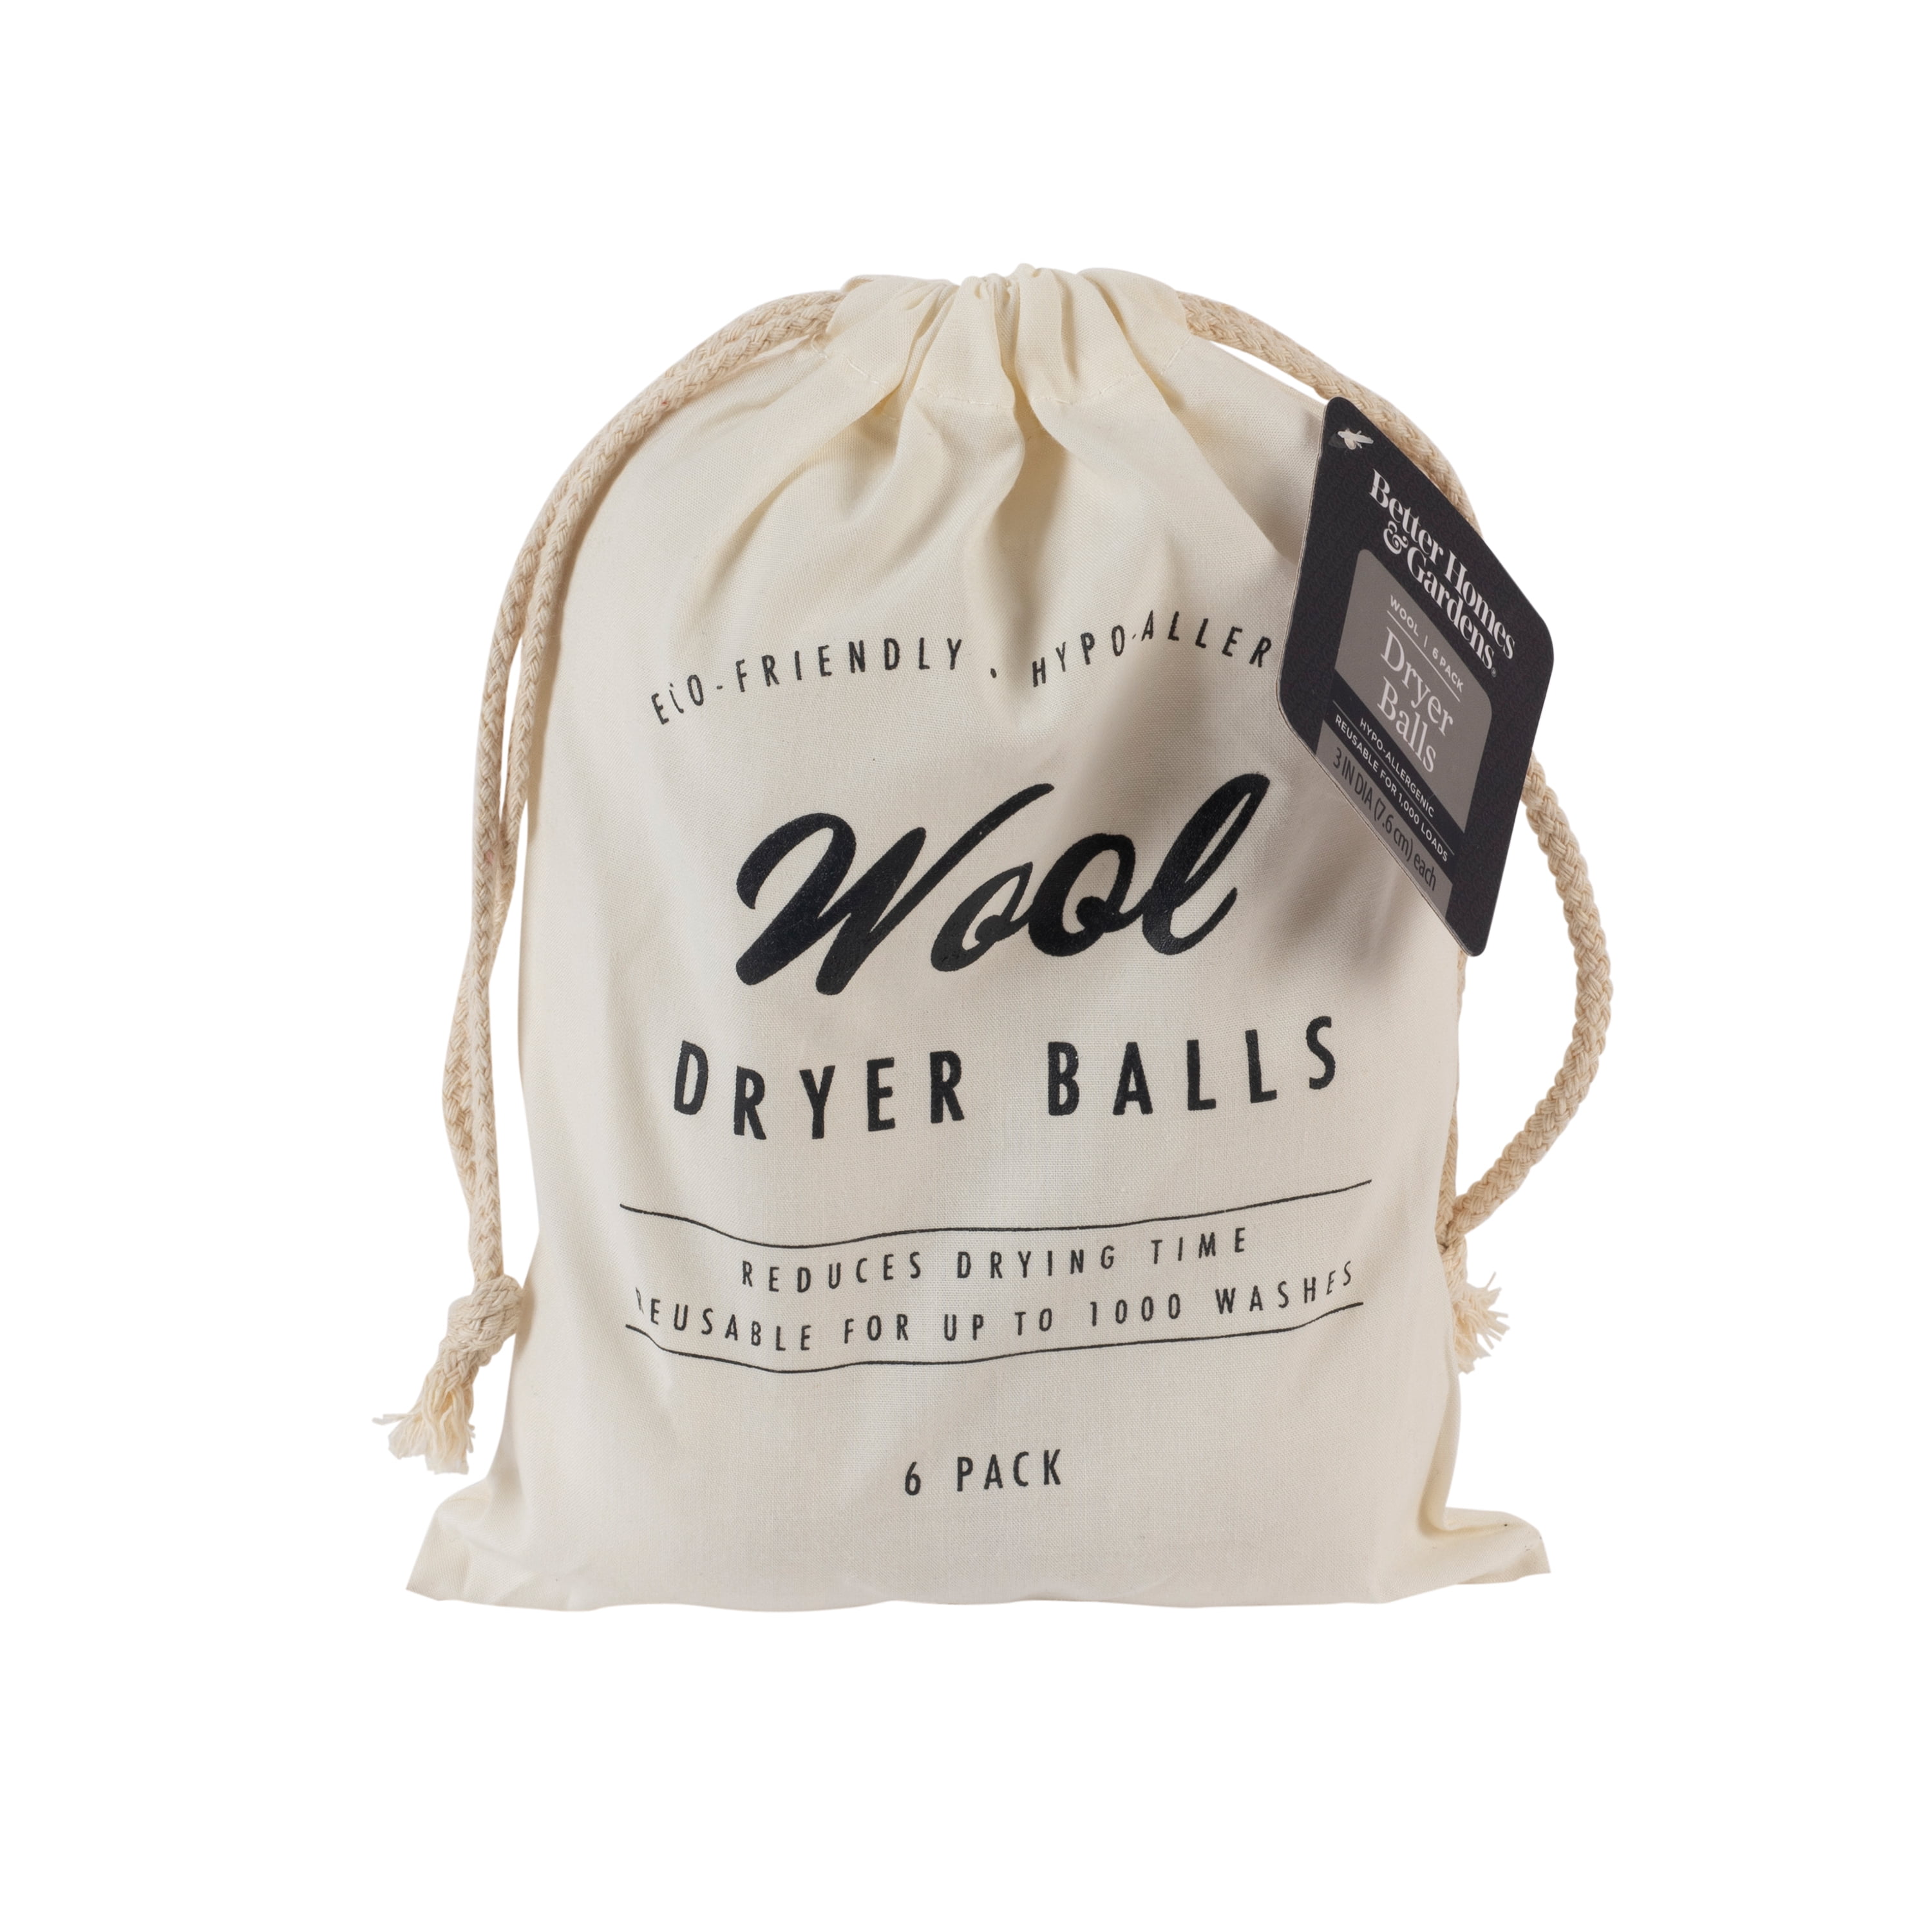 Better Homes & Gardens Wool Dryer Balls, 6 balls per pack